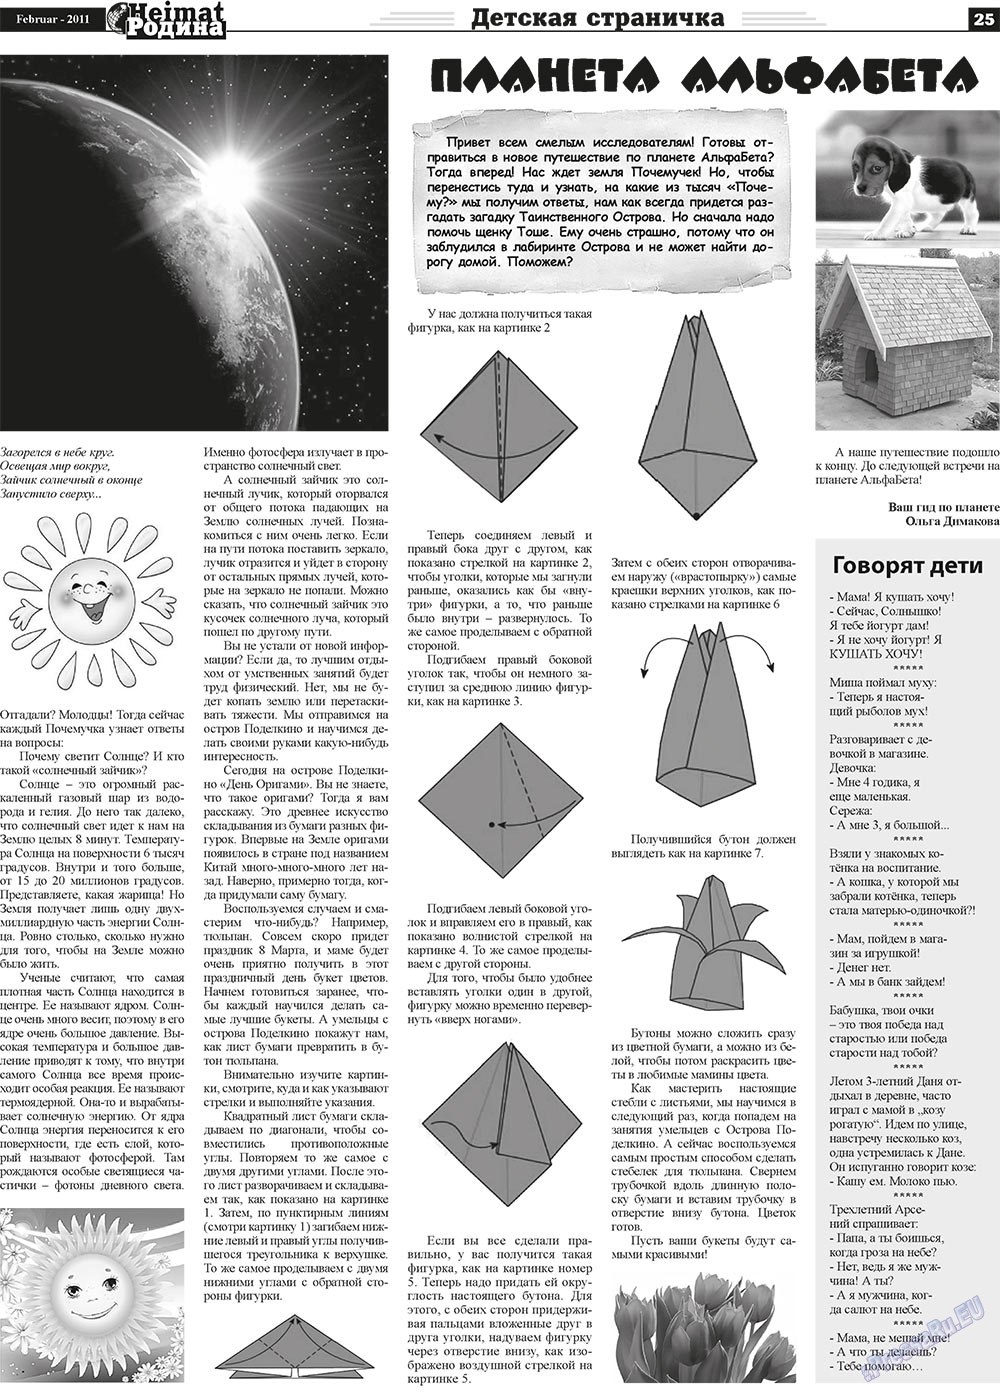 Heimat-Родина (газета). 2011 год, номер 2, стр. 25